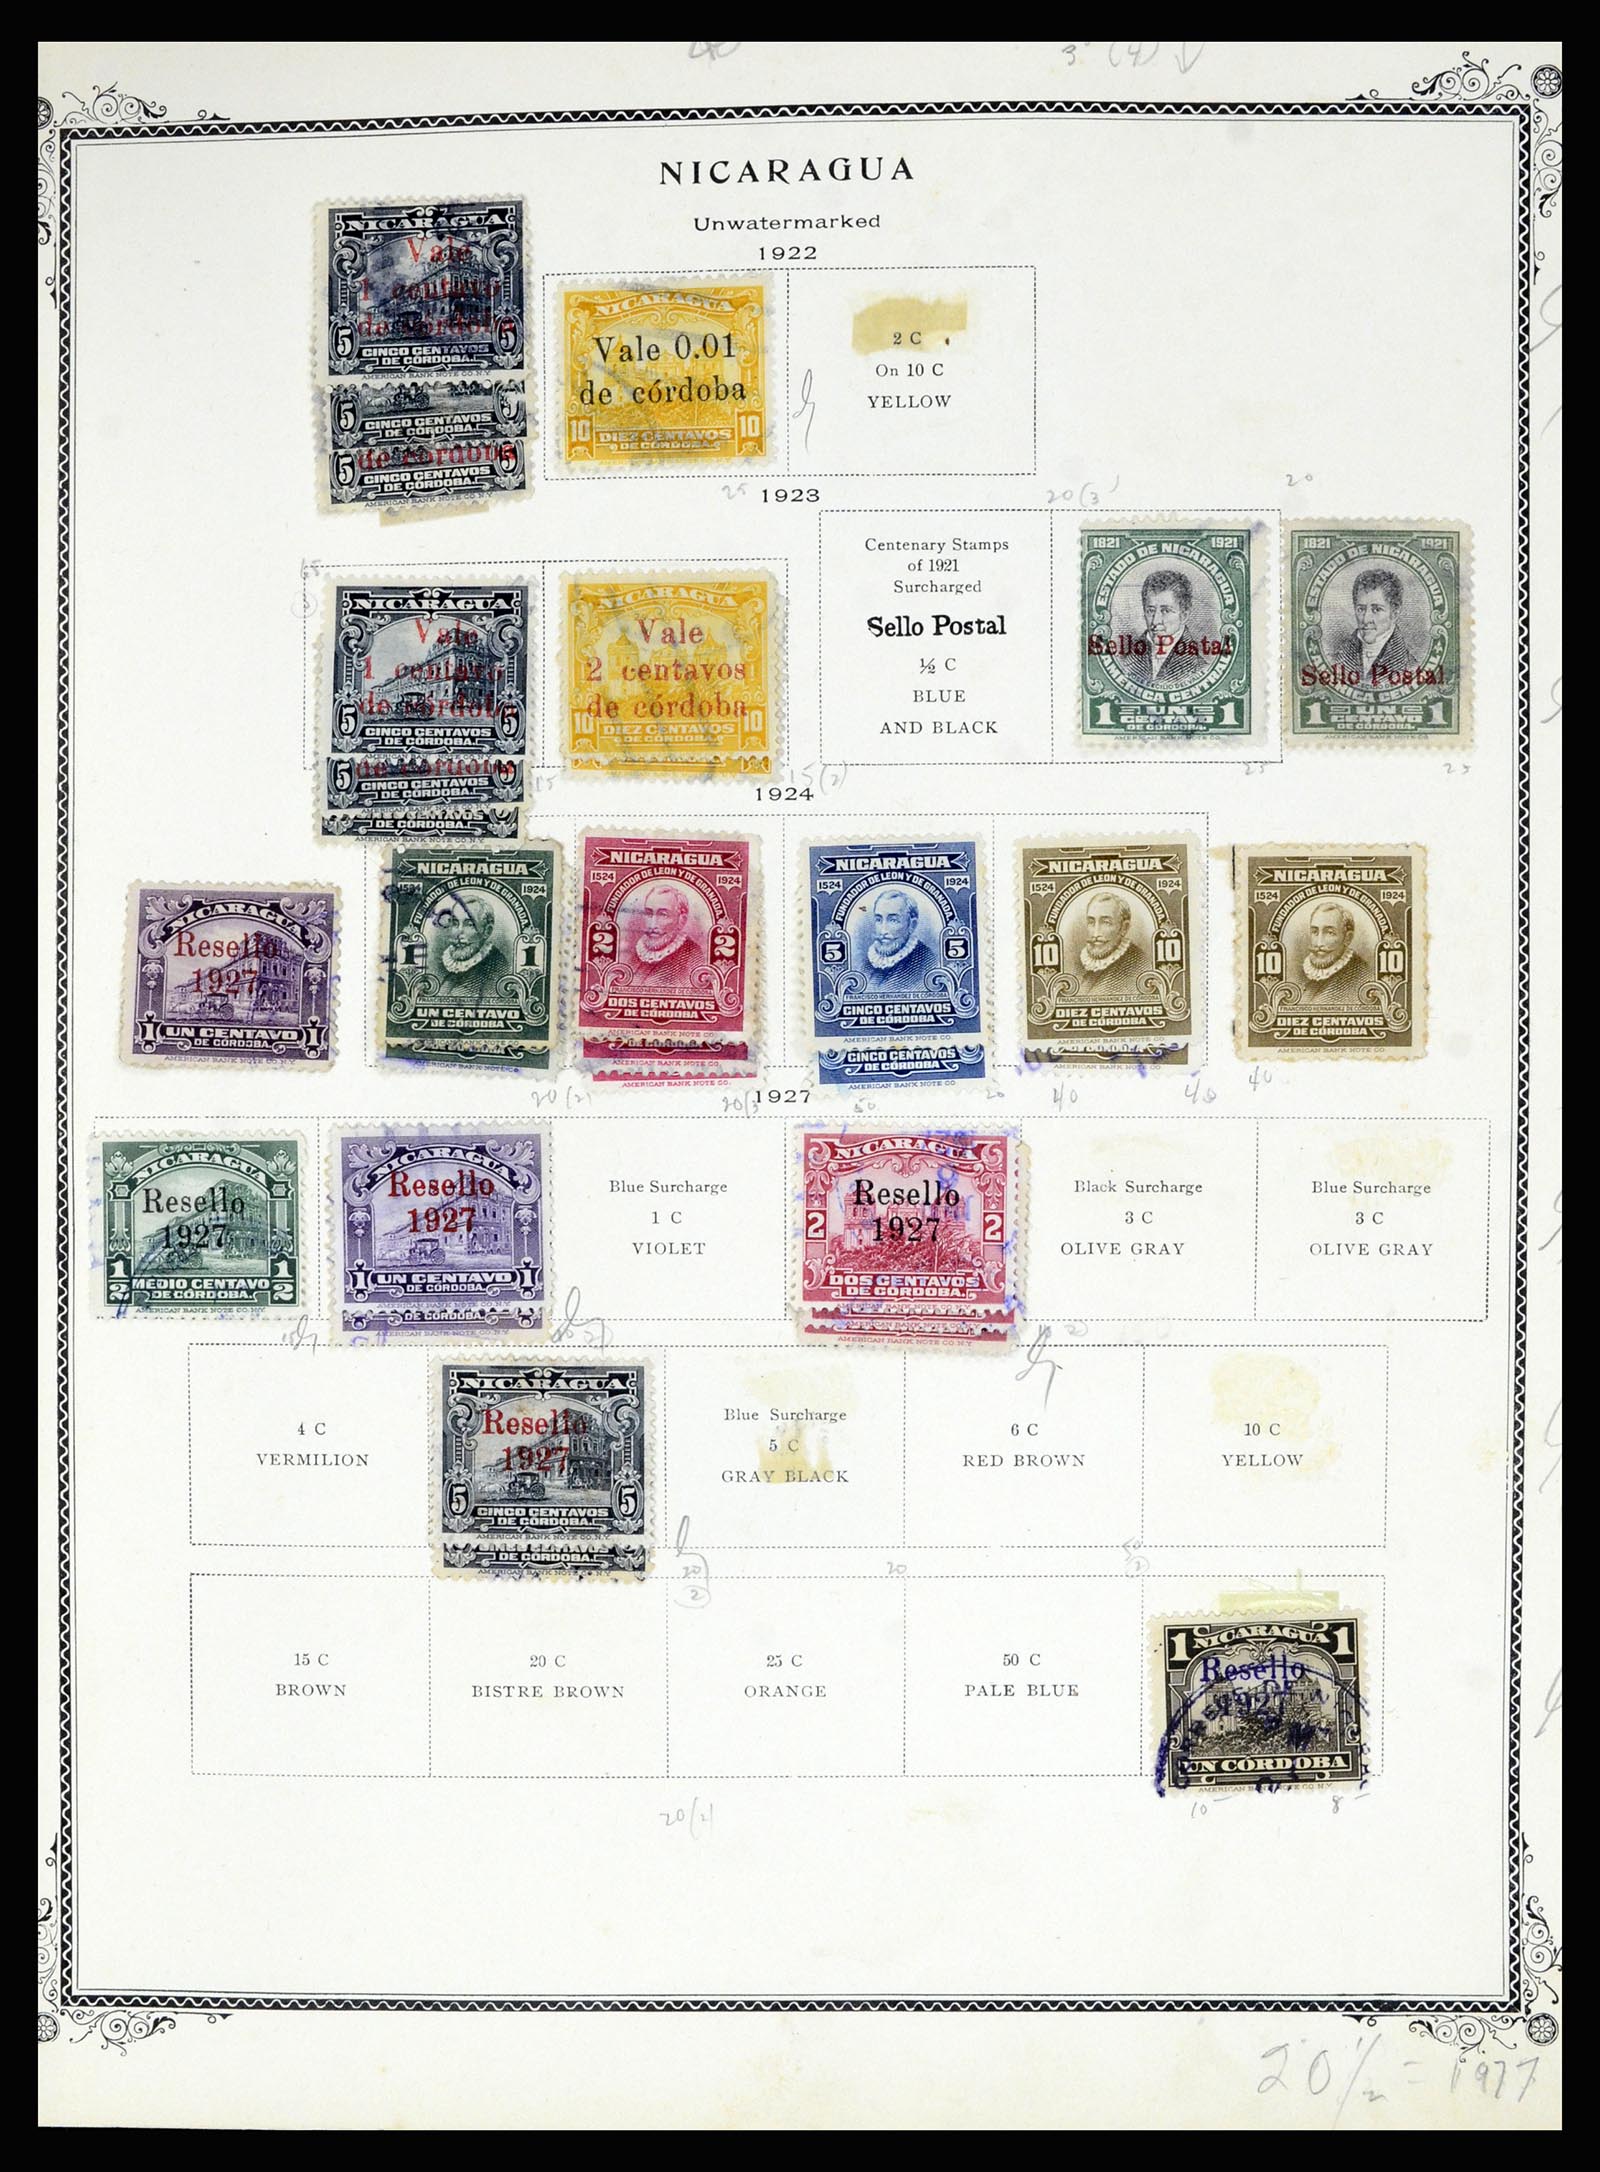 36494 071 - Stamp collection 36494 Nicaragua 1902-1945.